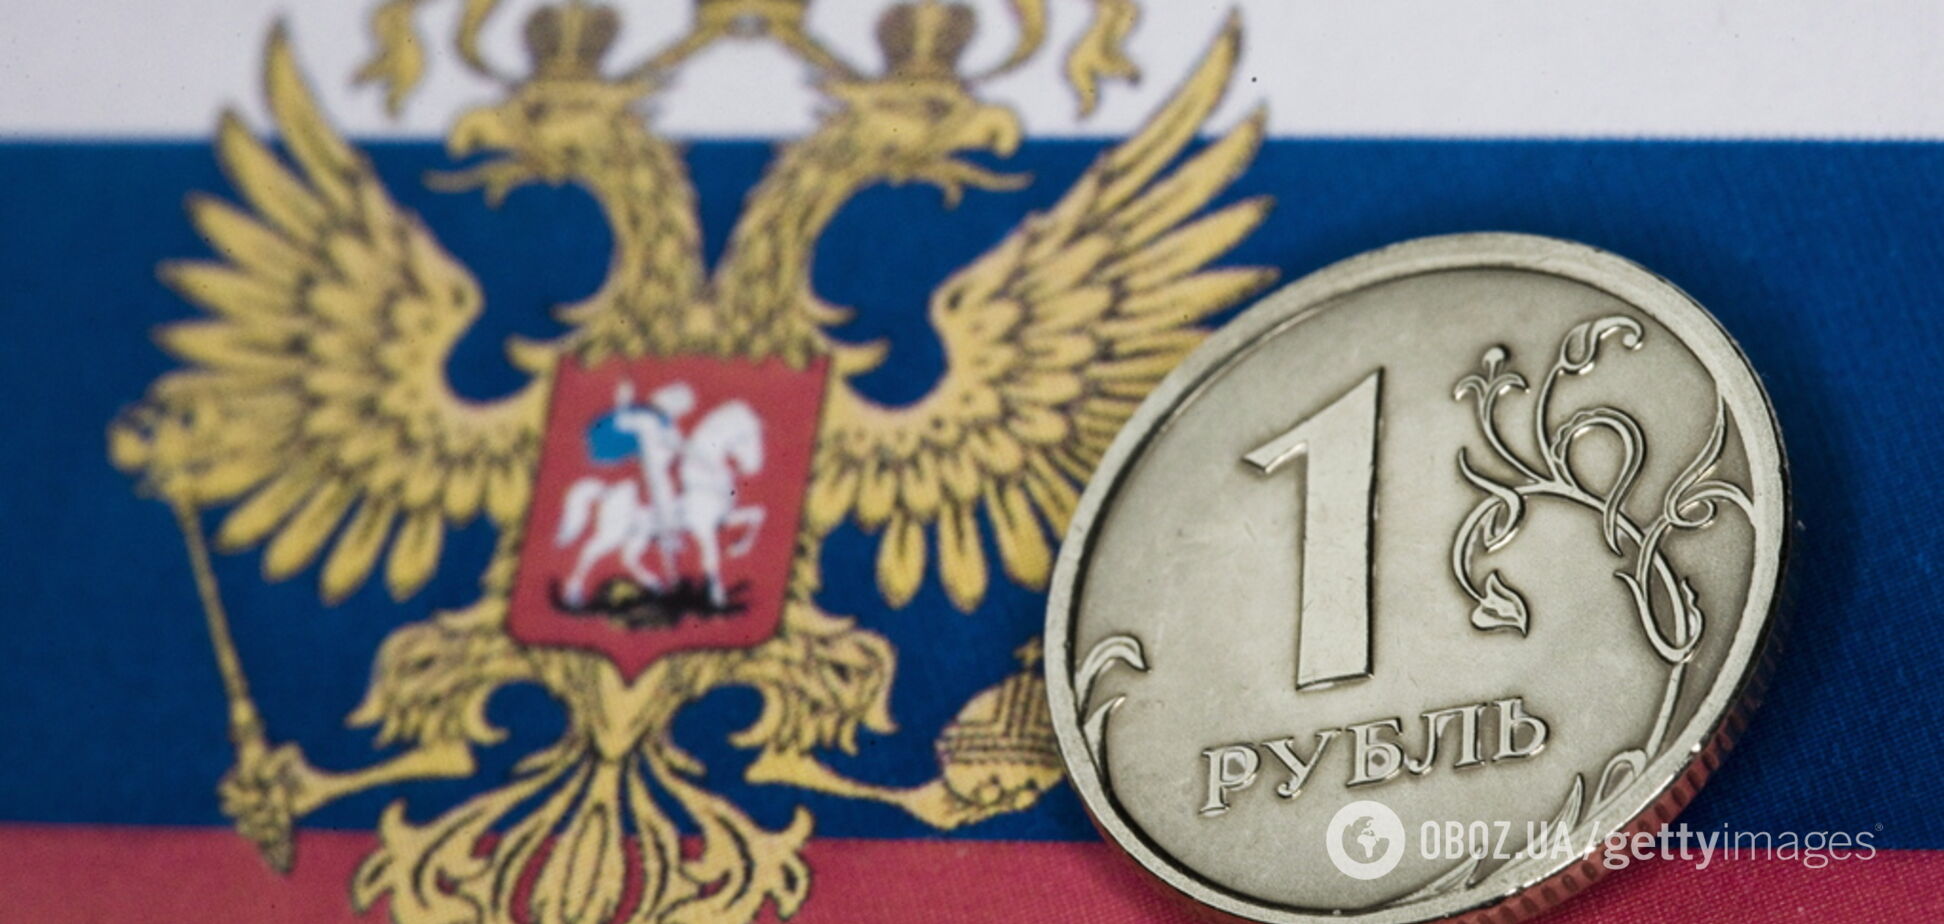 'Теперь жизнь наладится': сеть высмеяла мизерные надбавки пенсий в России